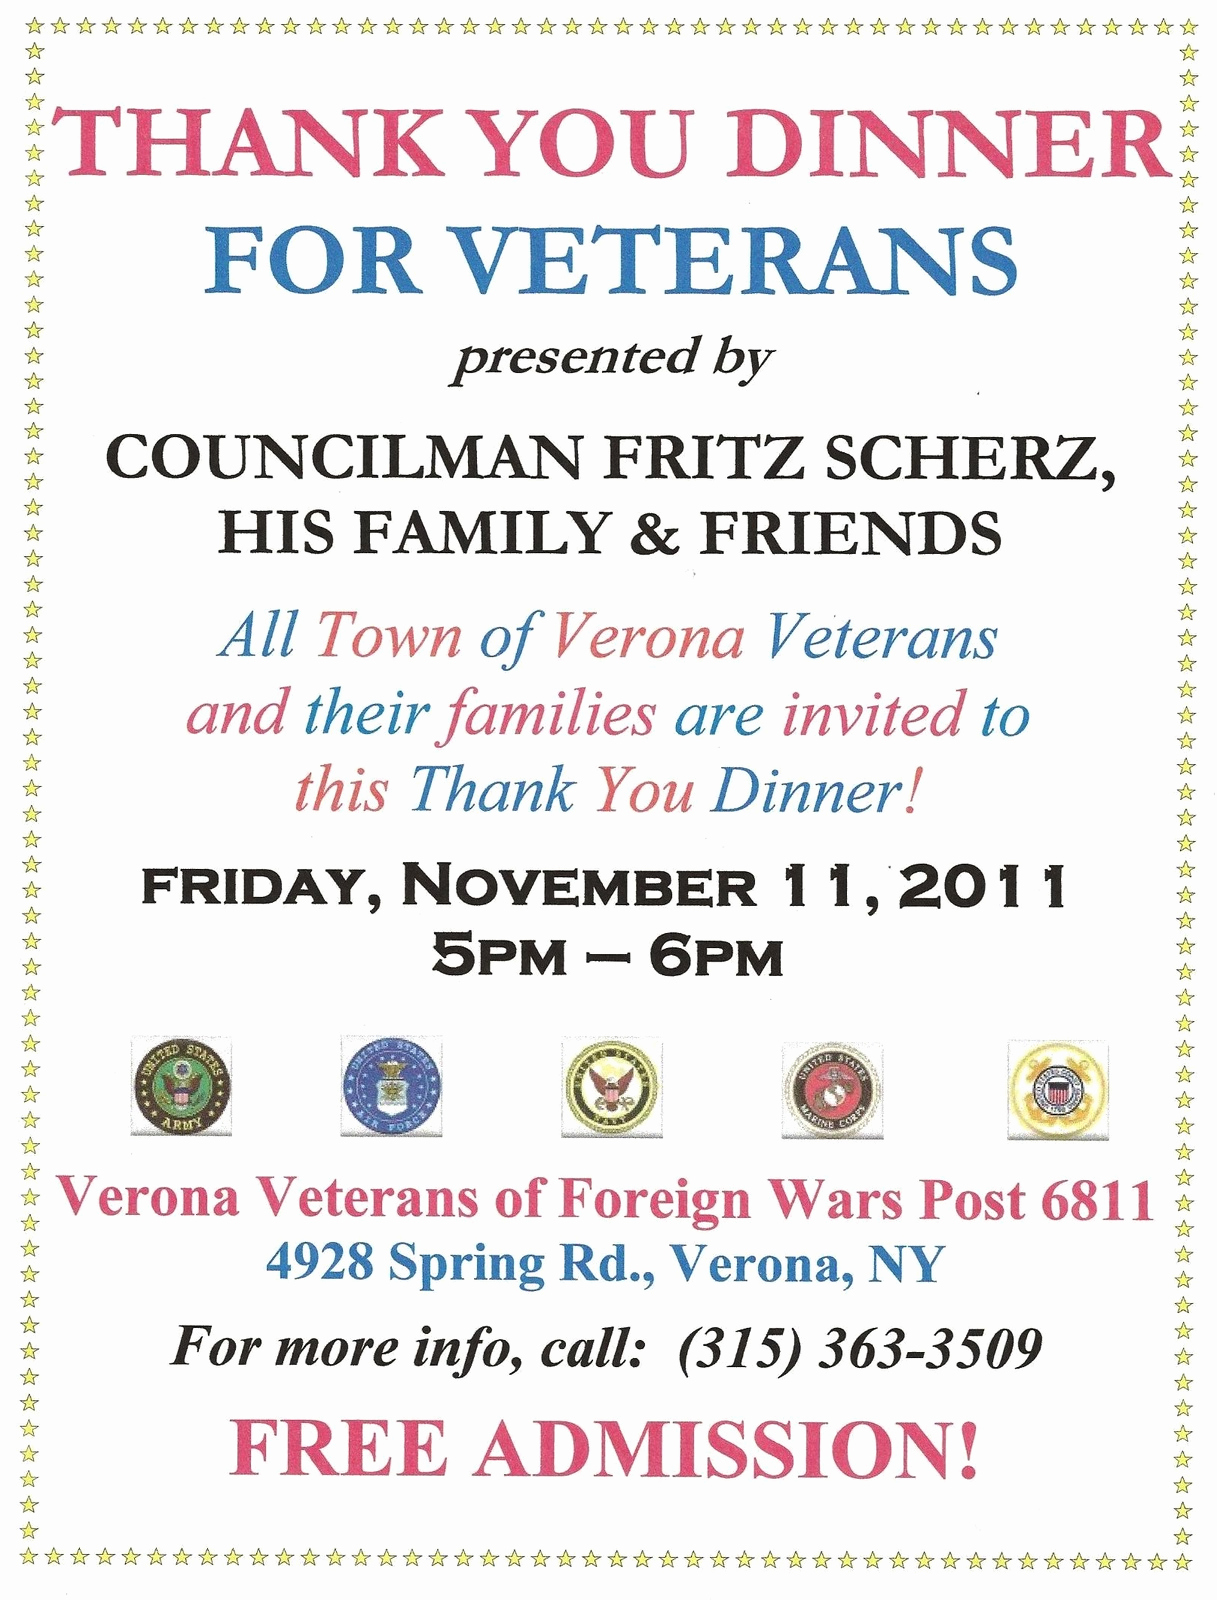 Thank You for Dinner Lovely Fritz Scherz I Am Hosting A Thank You Dinner for Veterans